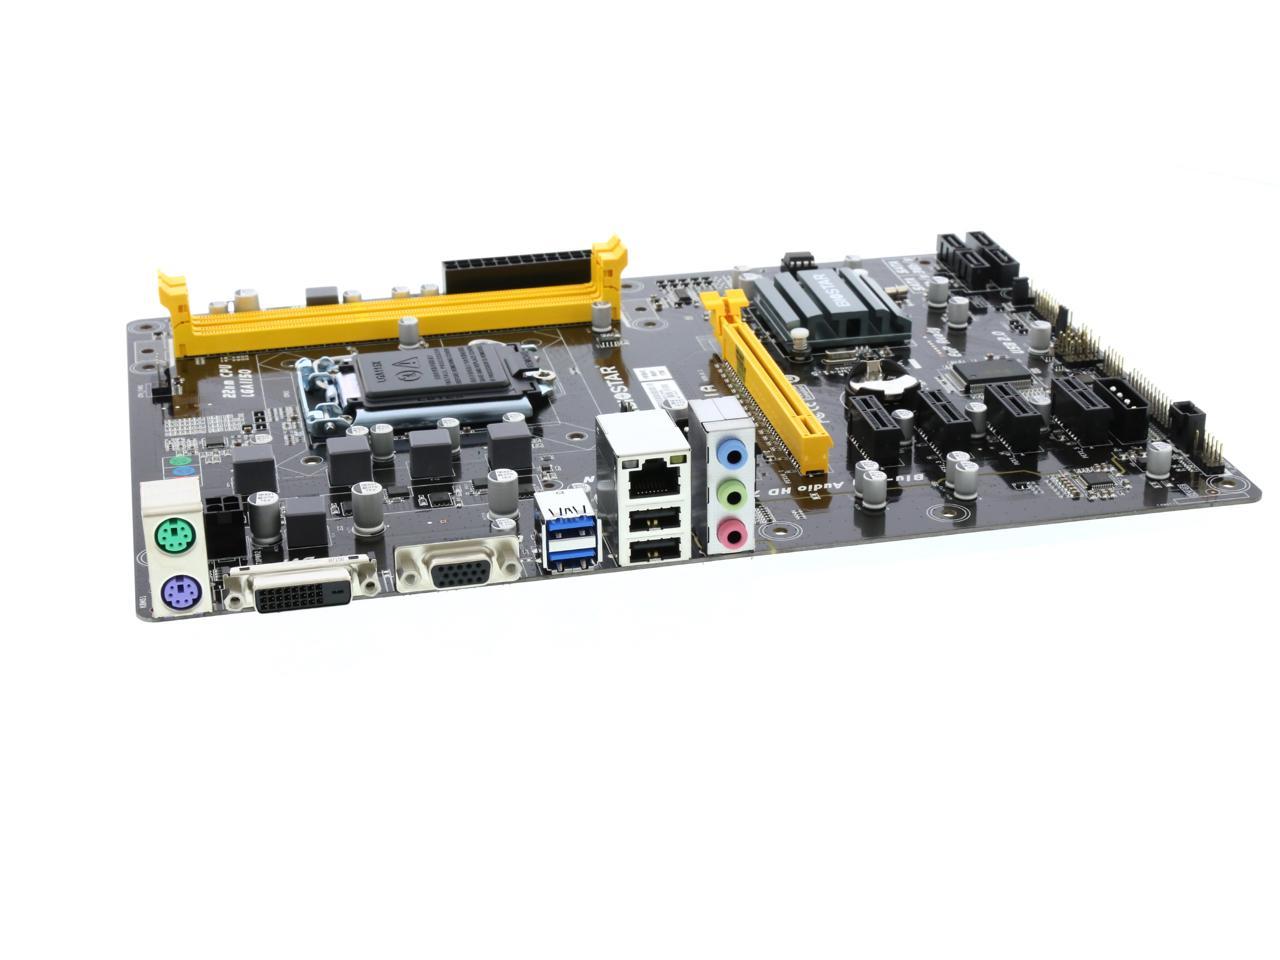 BIOSTAR H81A LGA 1150 Intel H81 SATA 6Gb/s USB 3.0 ATX Intel